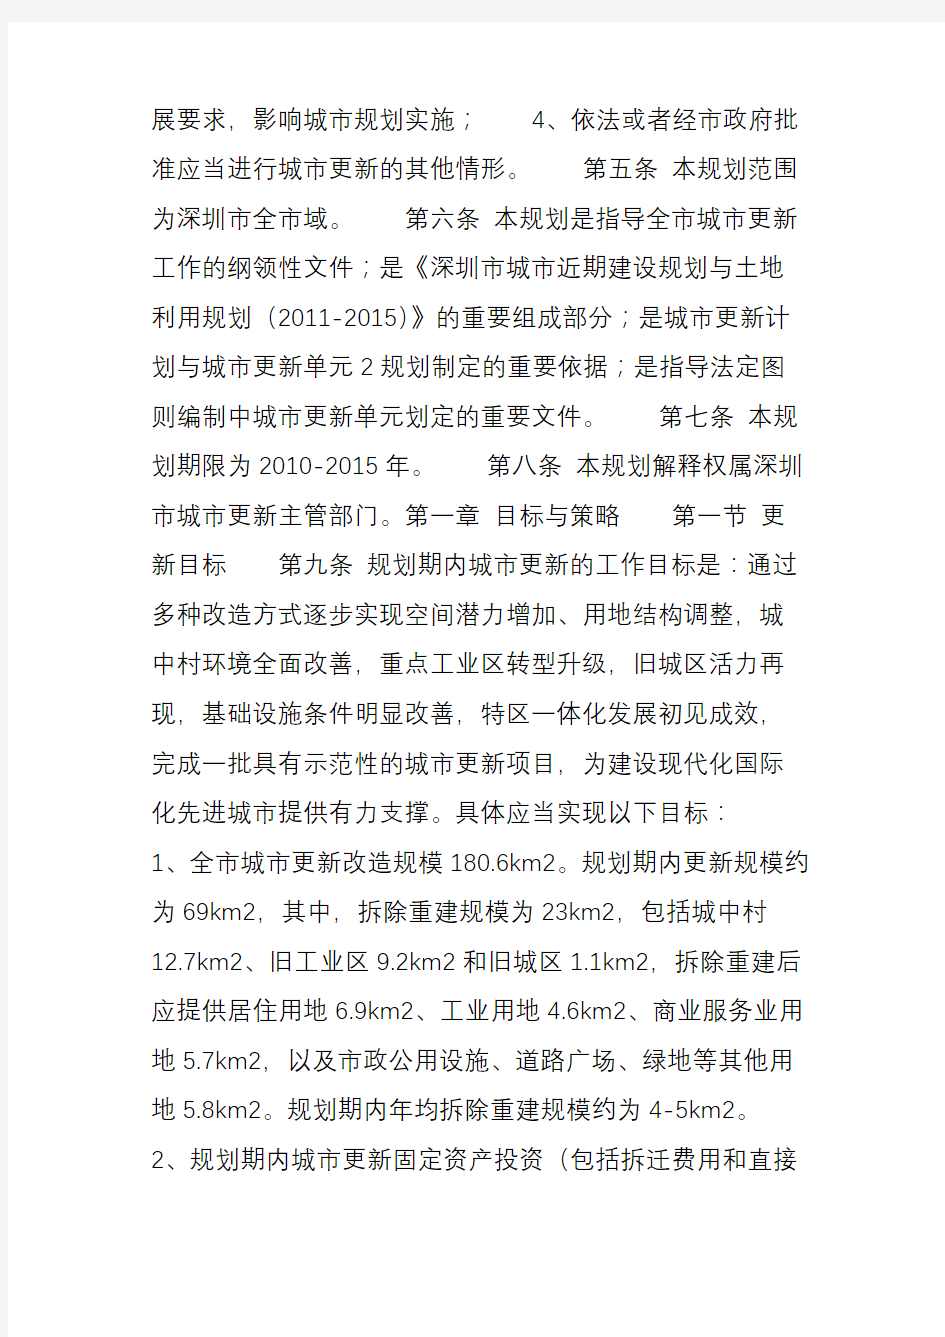 深圳市城市更新(“三旧”改造)专项规划(2010-2015)